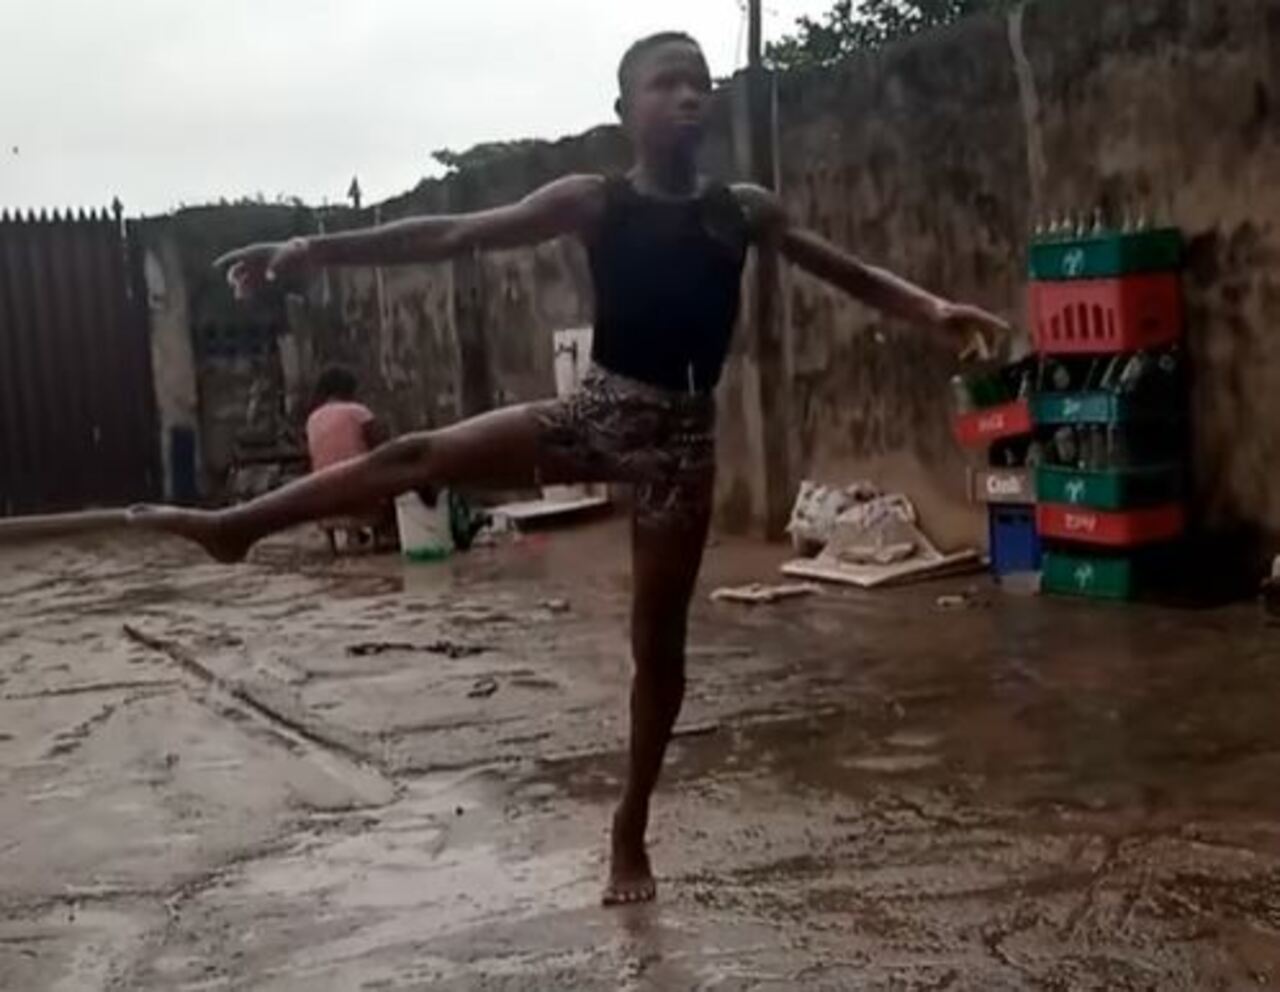 Si avvera il sogno del ballerino nigeriano: una donna pagherà i suoi studi. Credit Immagine: Facebook